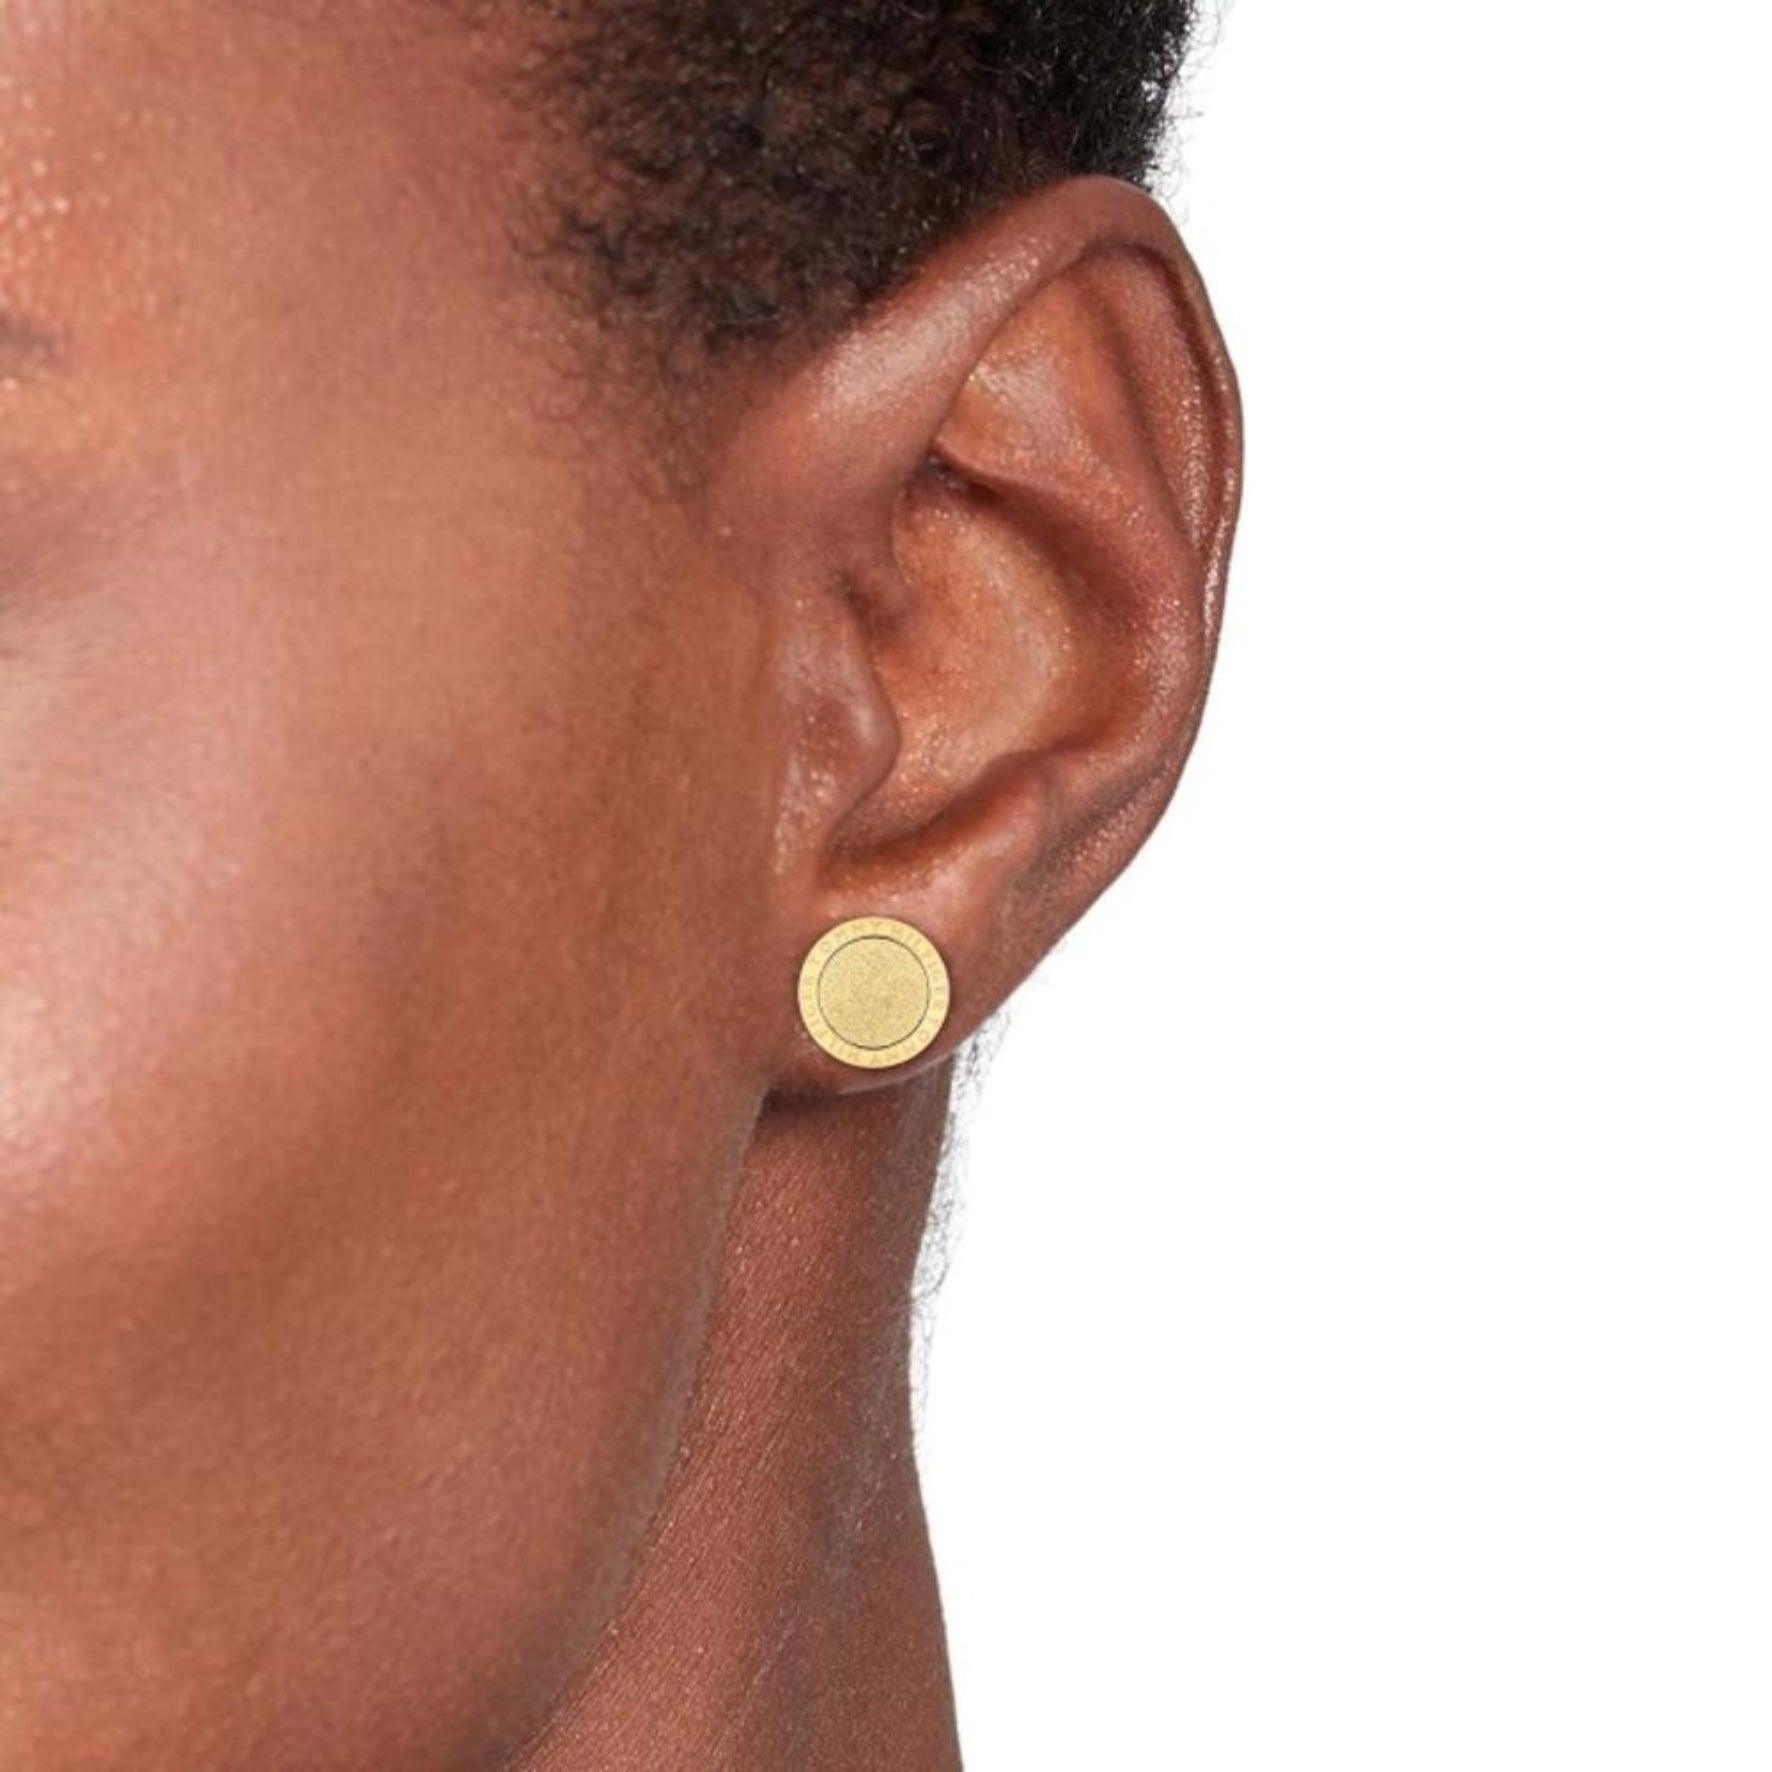 Γυναικεία σκουλαρίκια καρφωτά Tommy Hilfiger με στρογγυλό σχέδιο σε χρυσό χρώμα, φορεμένα σε γυναικείο αυτί.